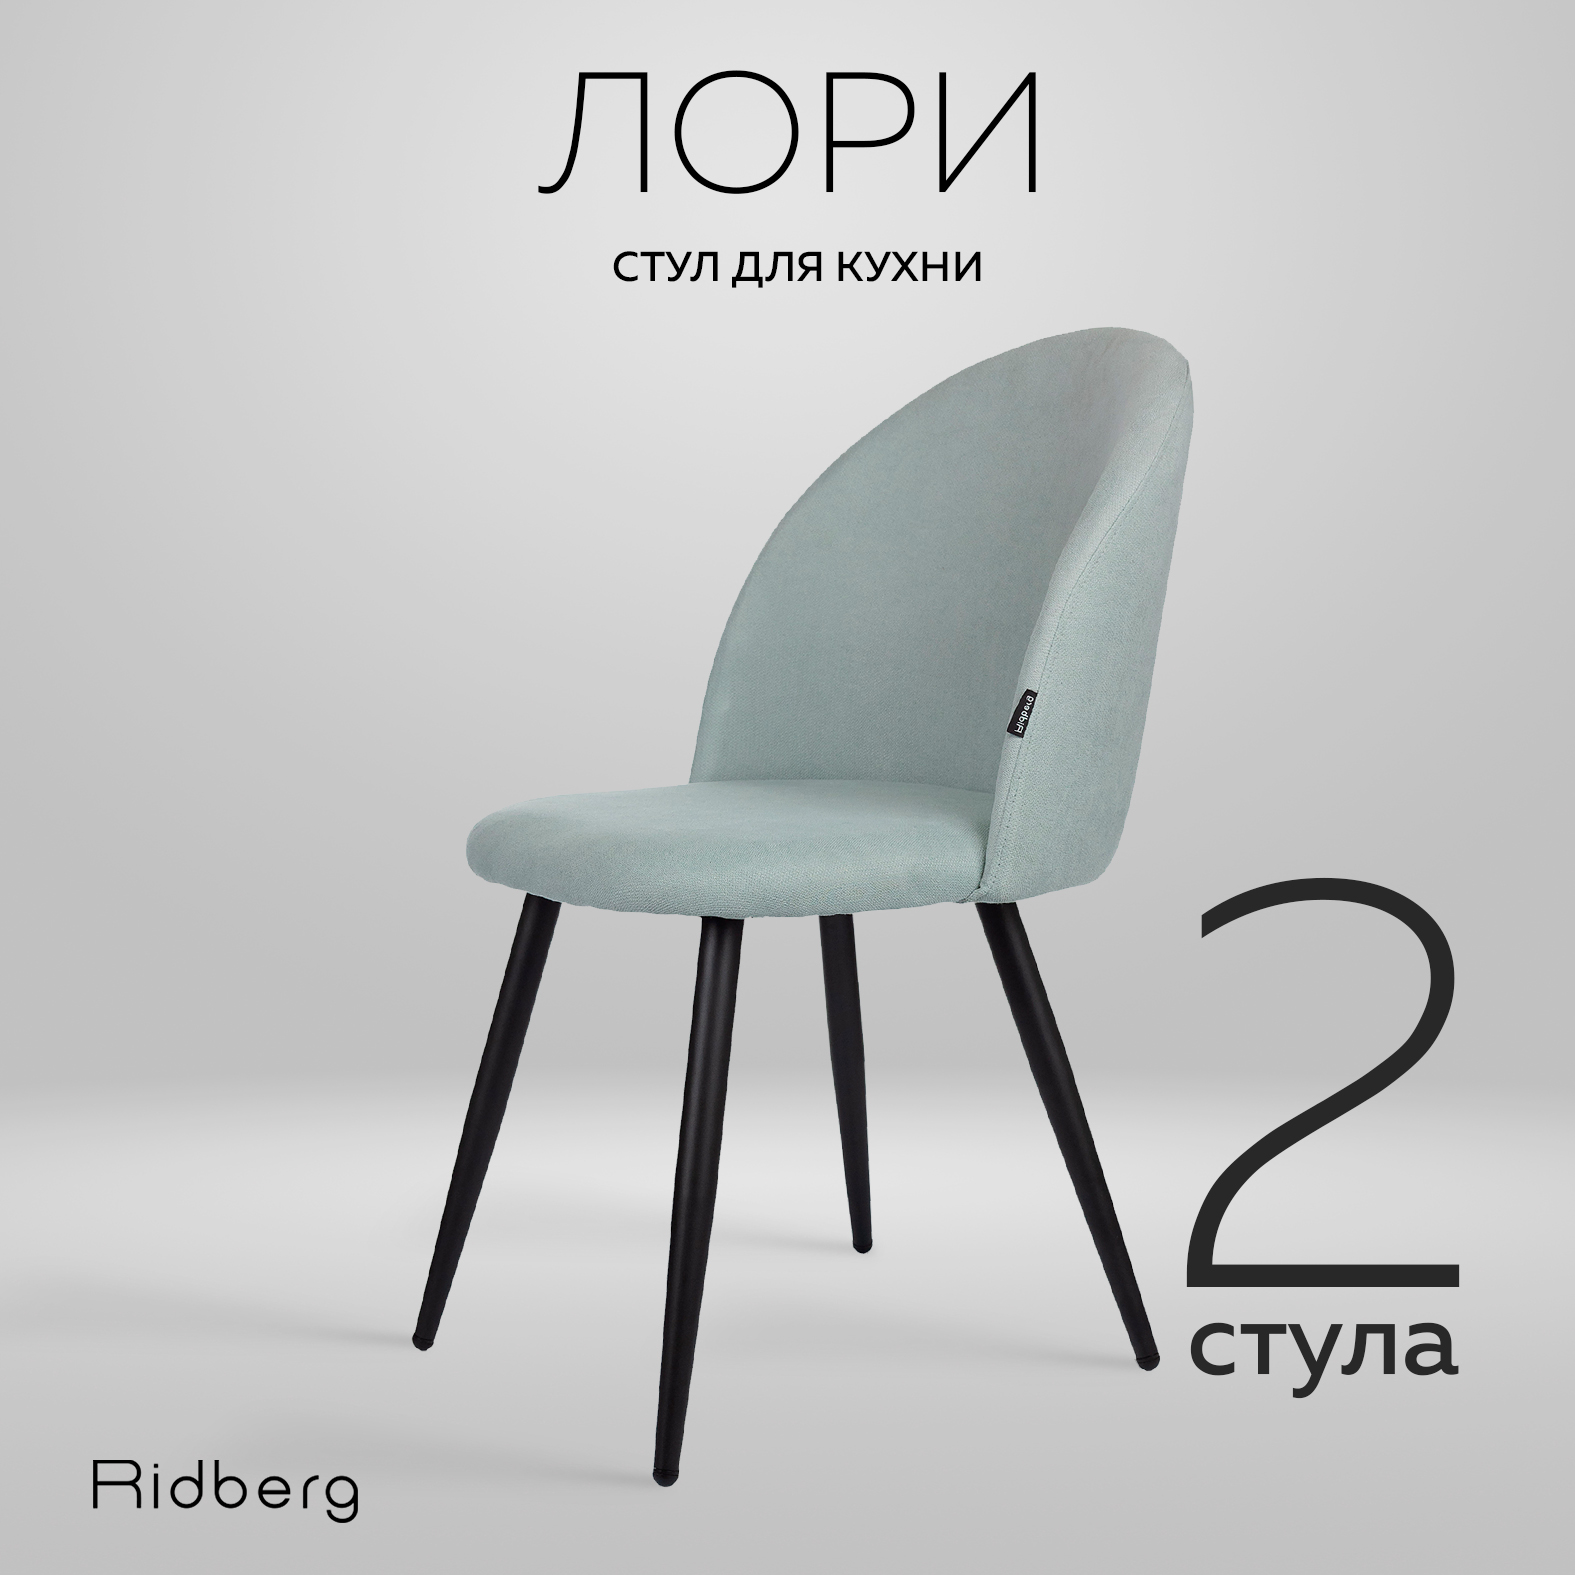 Комплект стульев для кухни Ridberg Лори Wool blue 2 шт - купить в Москве, цены на Мегамаркет | 600009625230